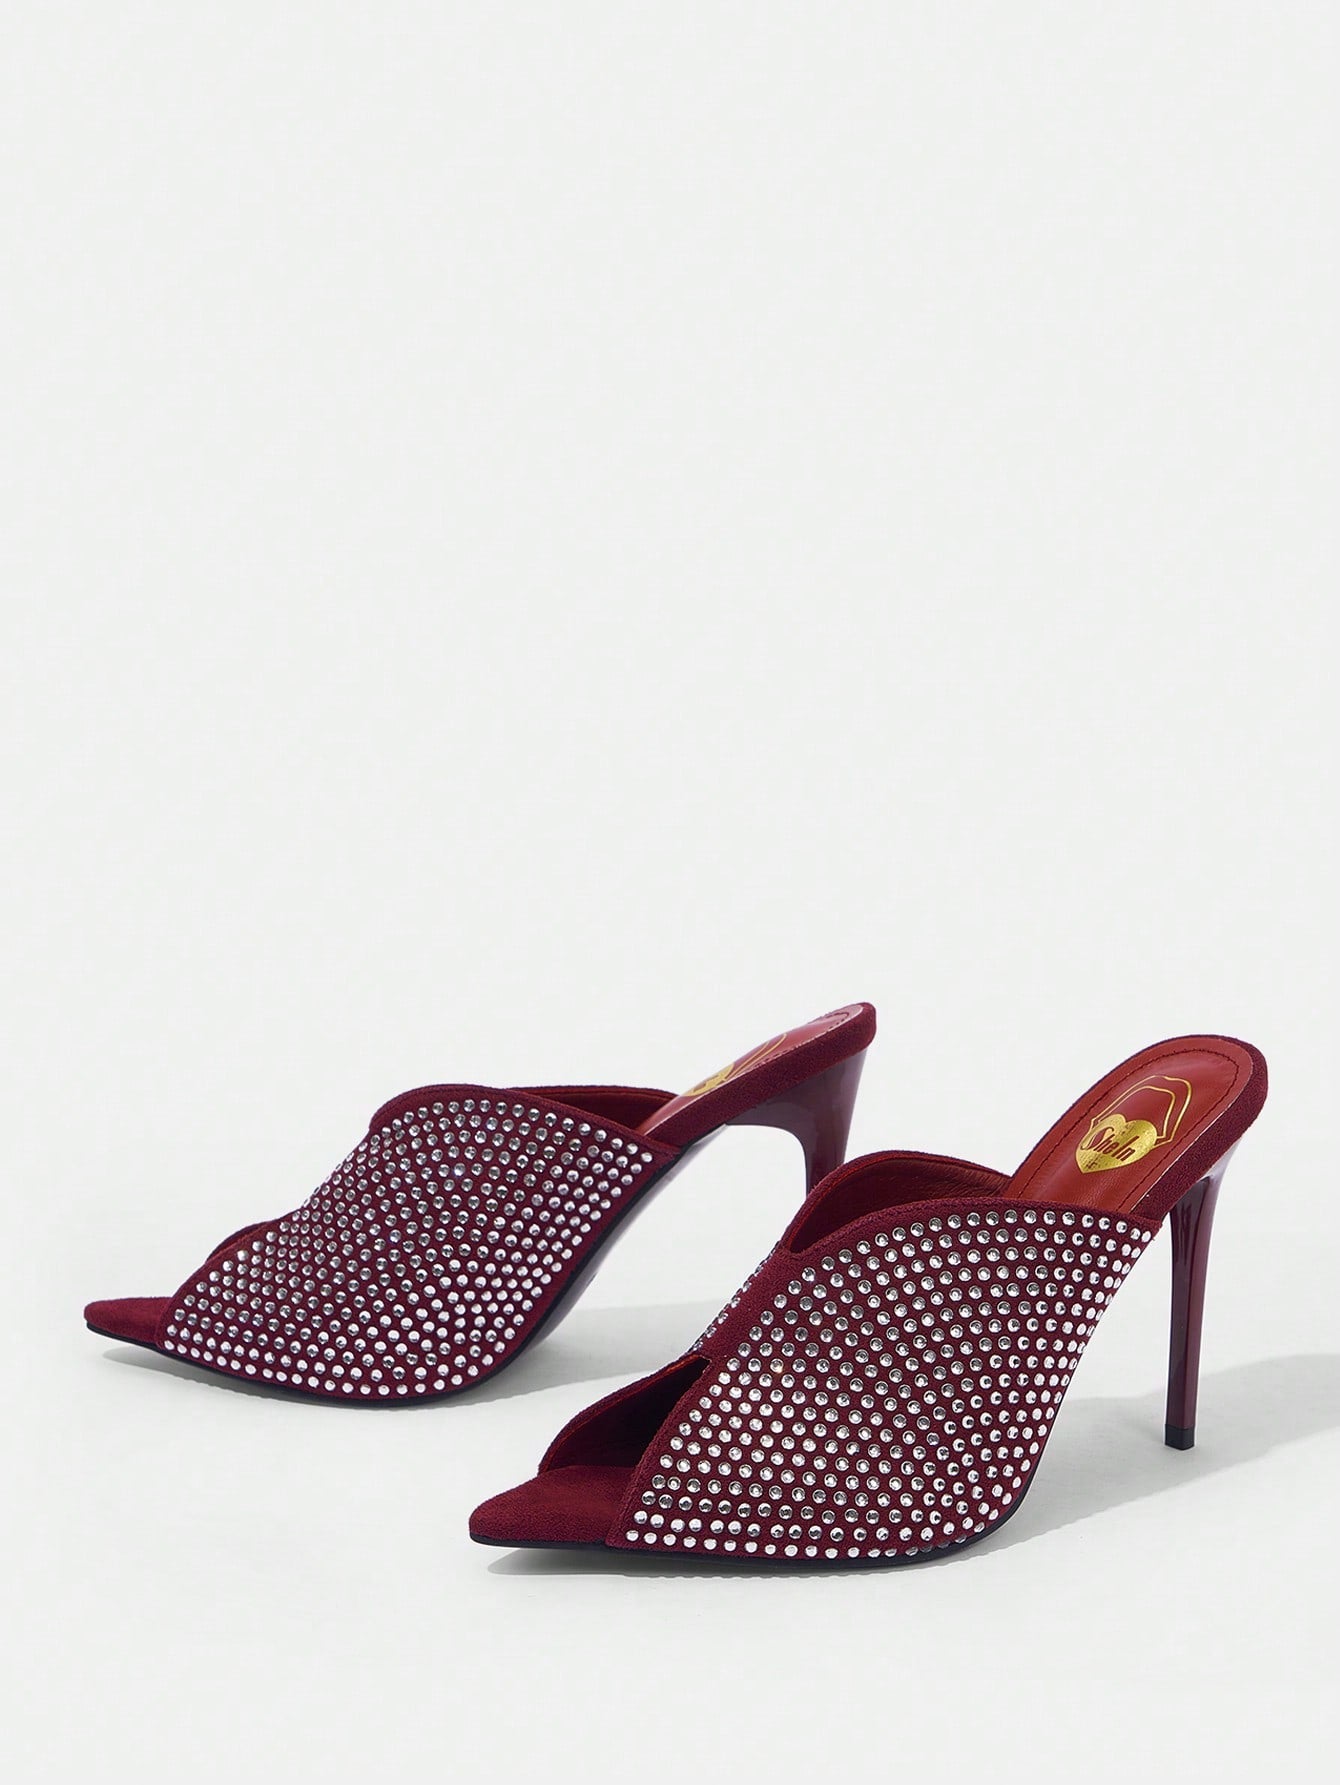 Fashionable Rhinestone Peep Toe High Heeled Sandals Slides